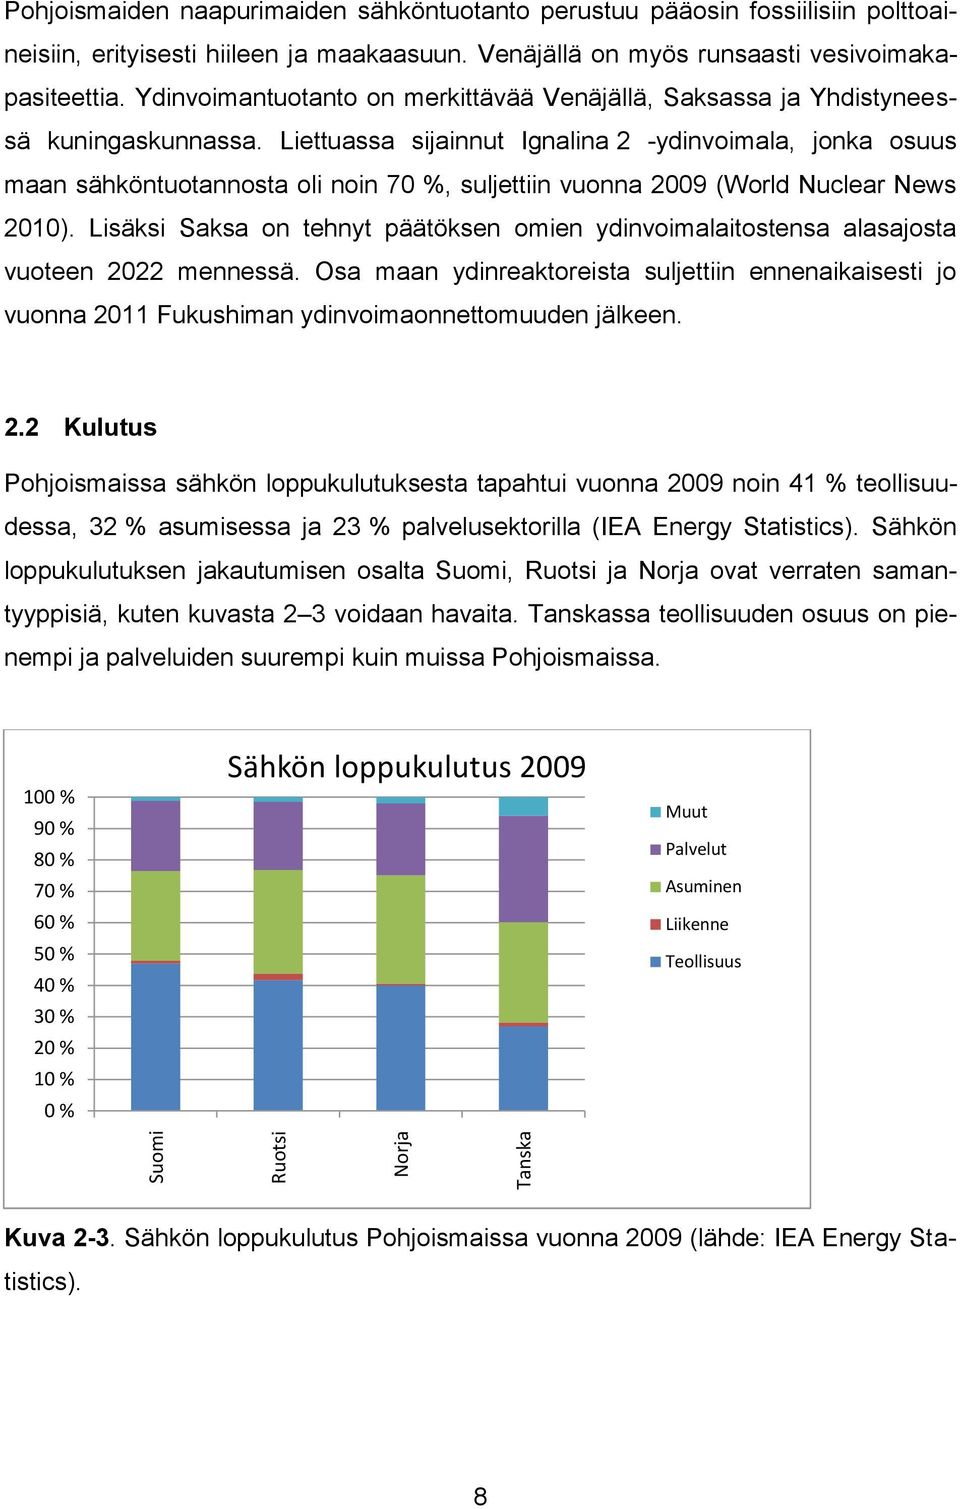 Liettuassa sijainnut Ignalina 2 -ydinvoimala, jonka osuus maan sähköntuotannosta oli noin 70 %, suljettiin vuonna 2009 (World Nuclear News 2010).